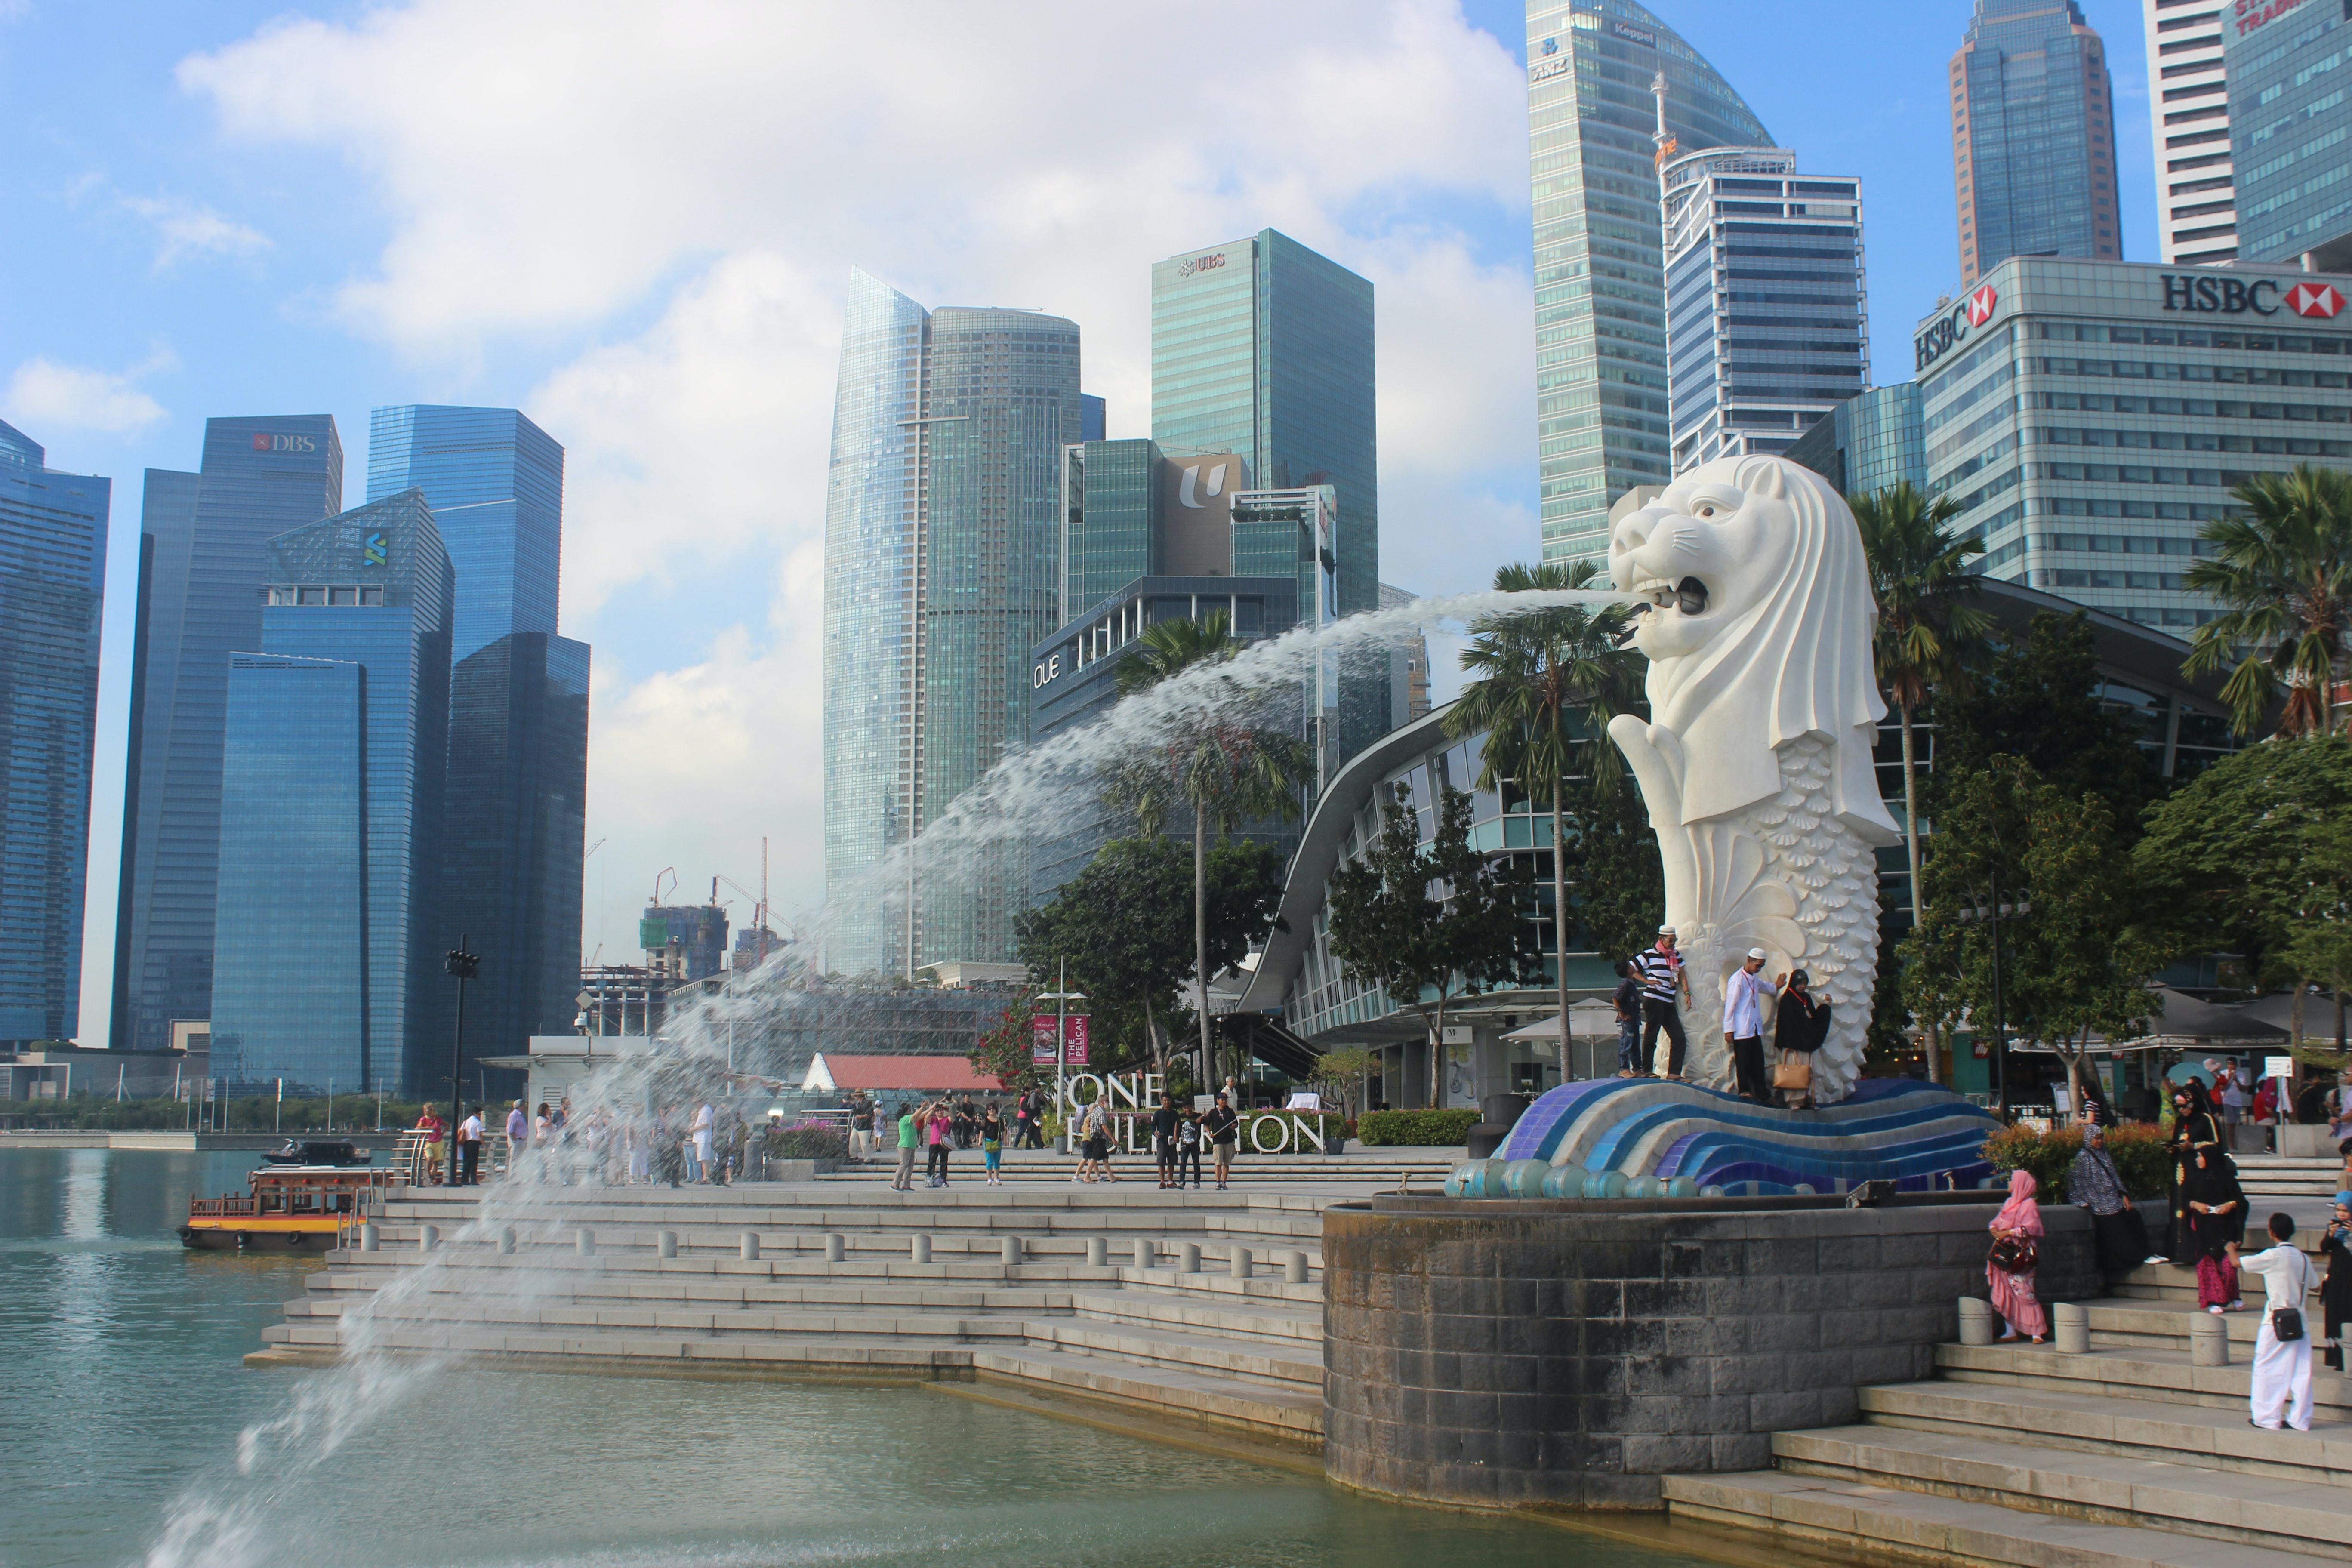 싱가포르 머라이언파크에서 머라이언이 물을 내뿜고 있는 모습